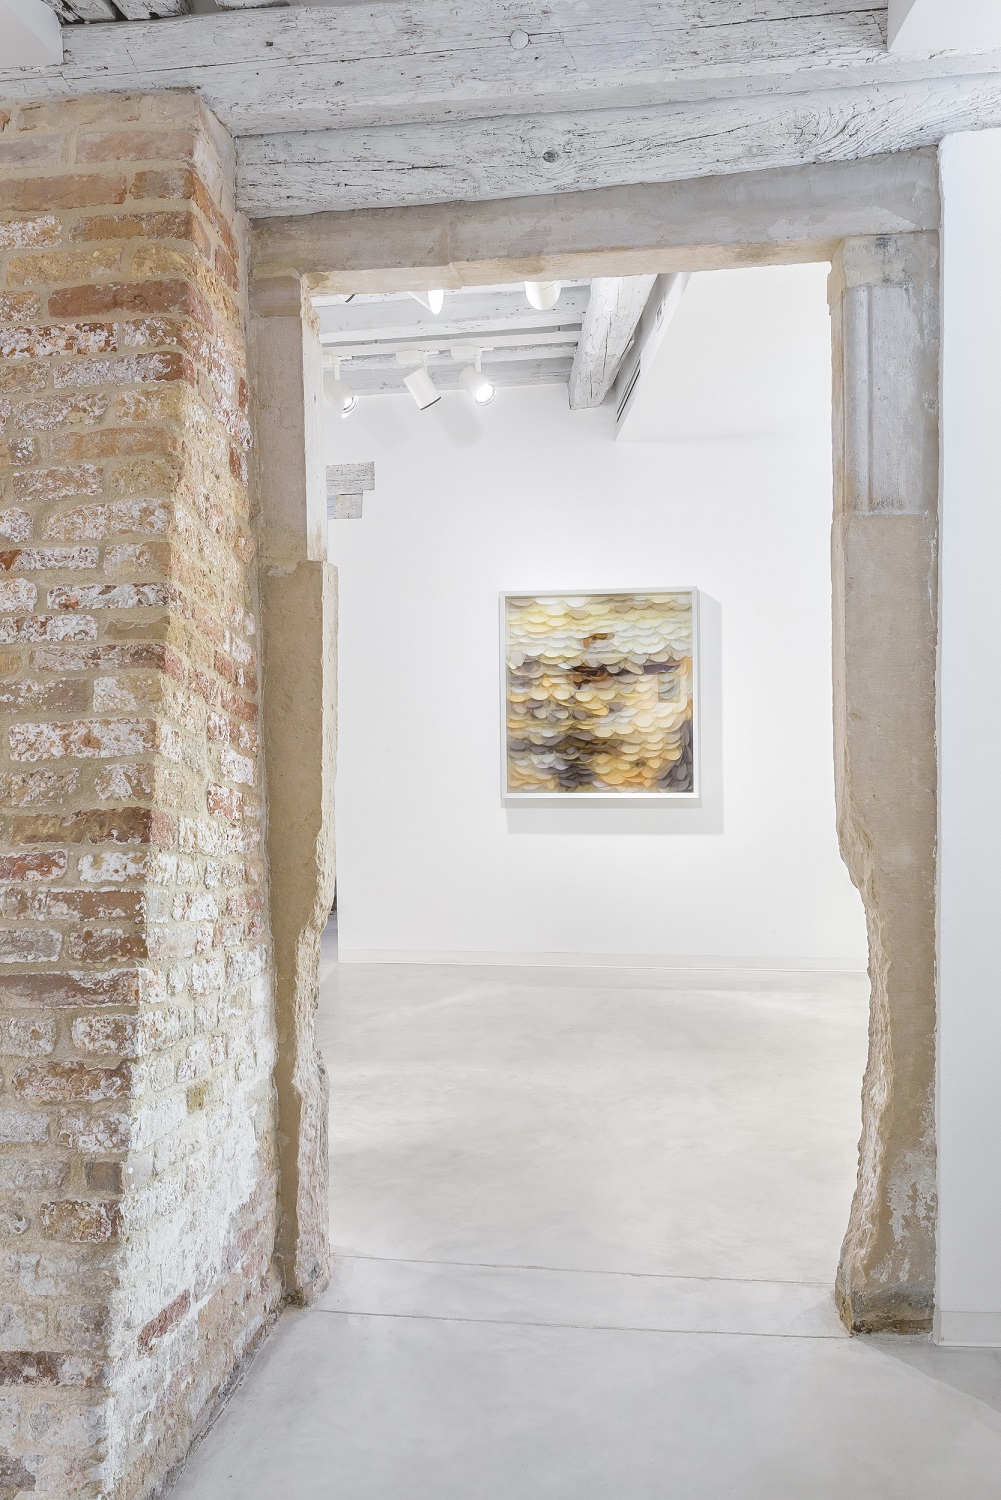 Maurizio Donzelli, Mirror, 103 x 97 x 7,5 cm, Mix media in box, 2016, photo Enrico Fiorese